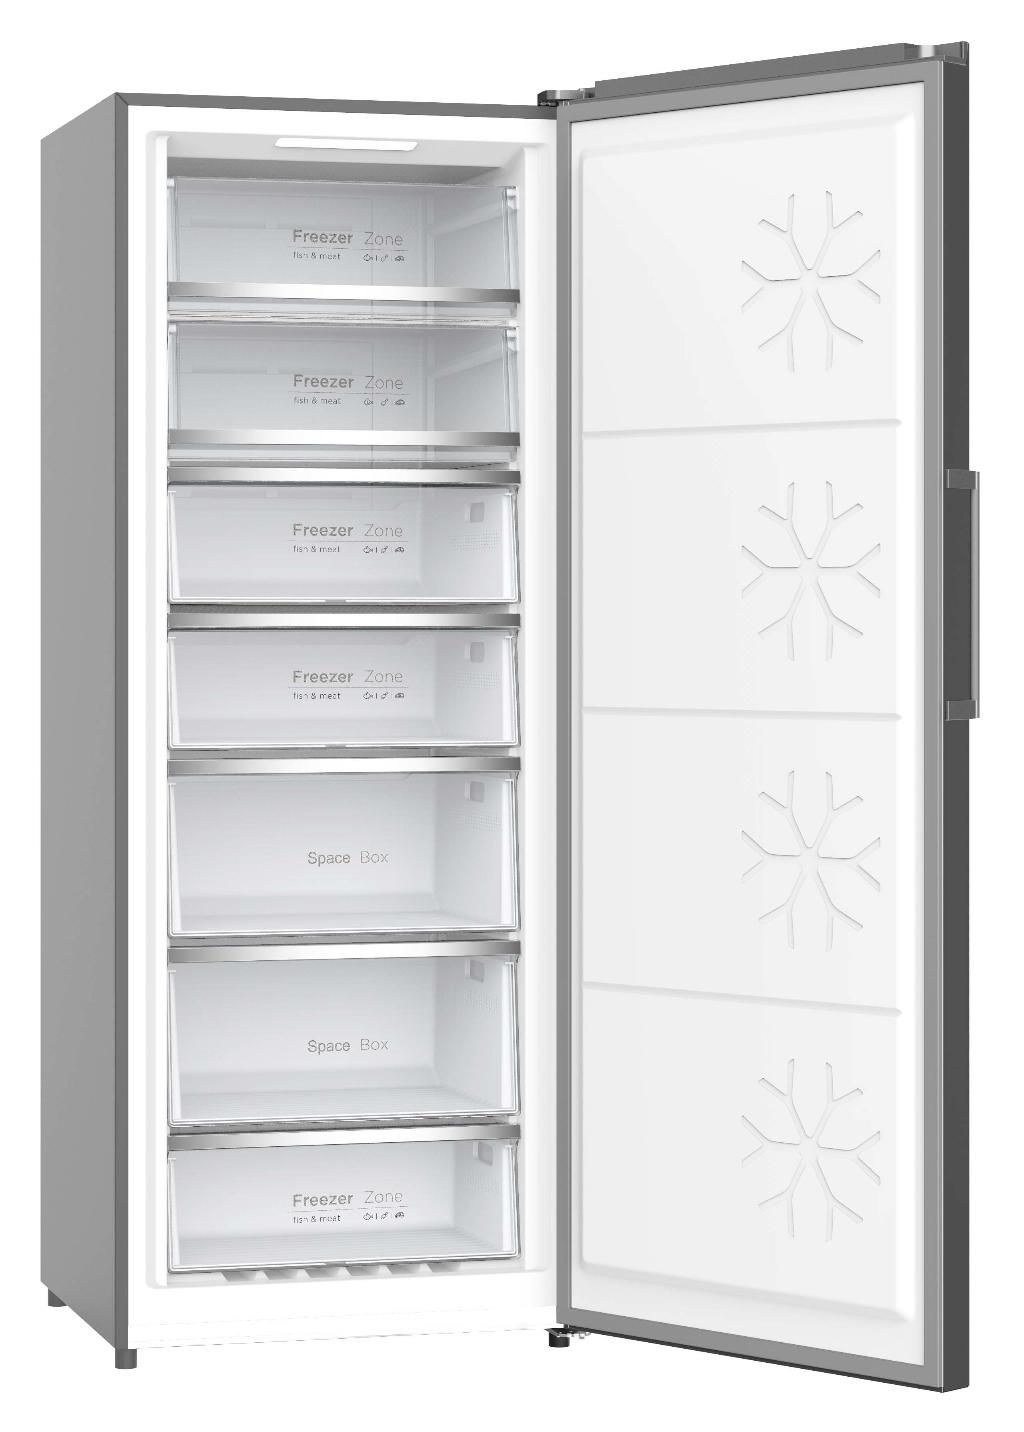 Congelador vertical barato con 7 cajones.